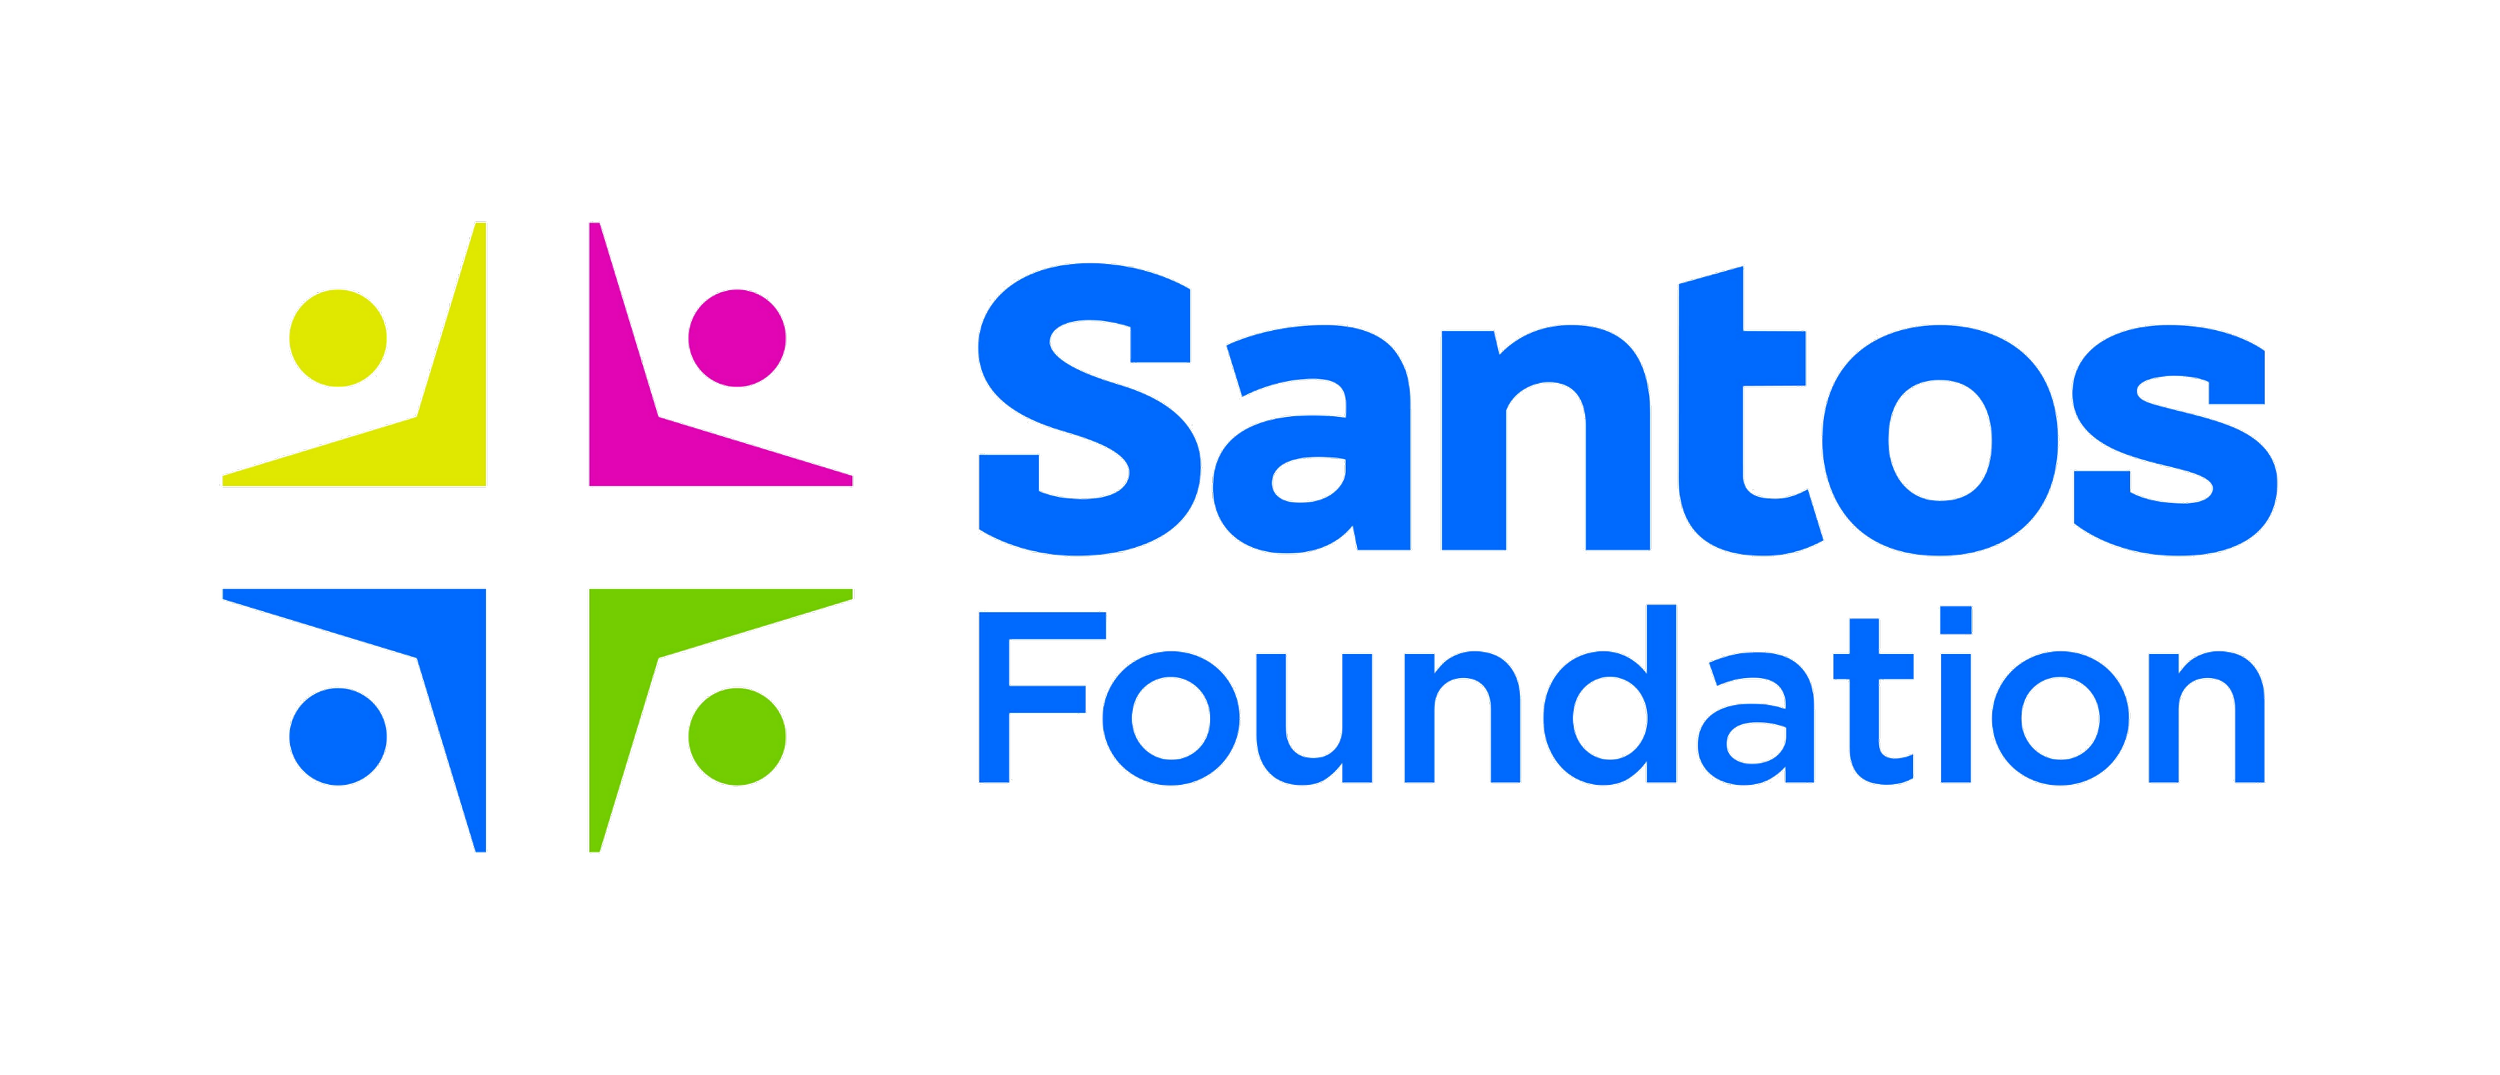 Santos Foundation.png